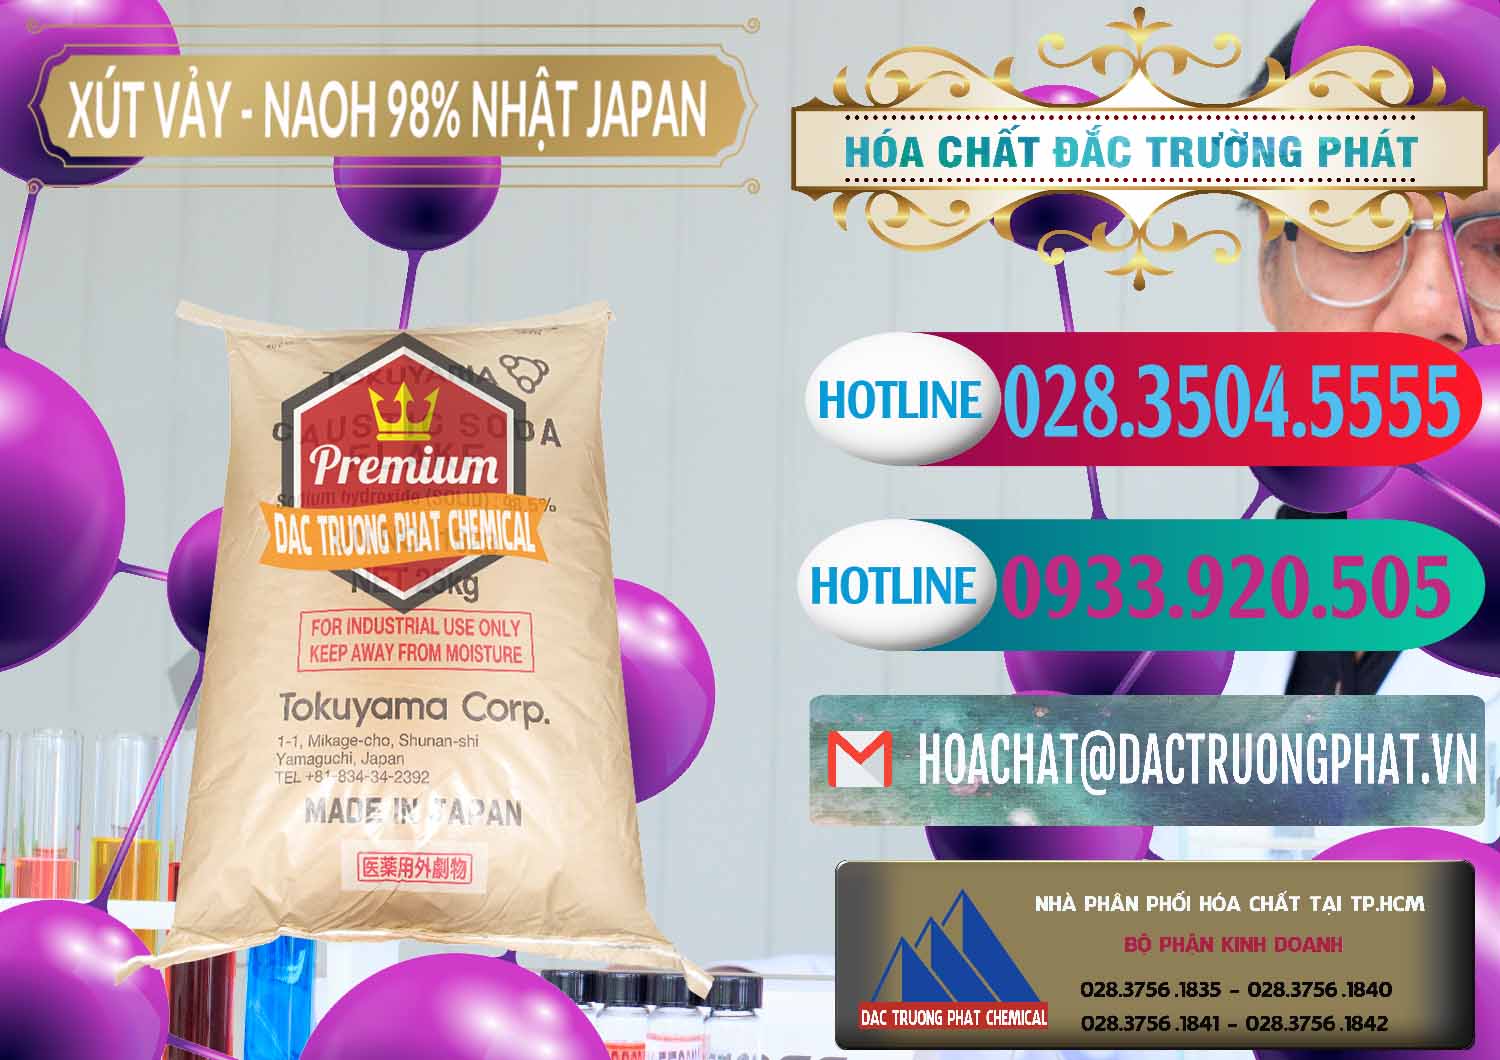 Chuyên kinh doanh ( bán ) Xút Vảy - NaOH Vảy 98% Tokuyama Nhật Bản Japan - 0173 - Cty bán ( cung cấp ) hóa chất tại TP.HCM - truongphat.vn